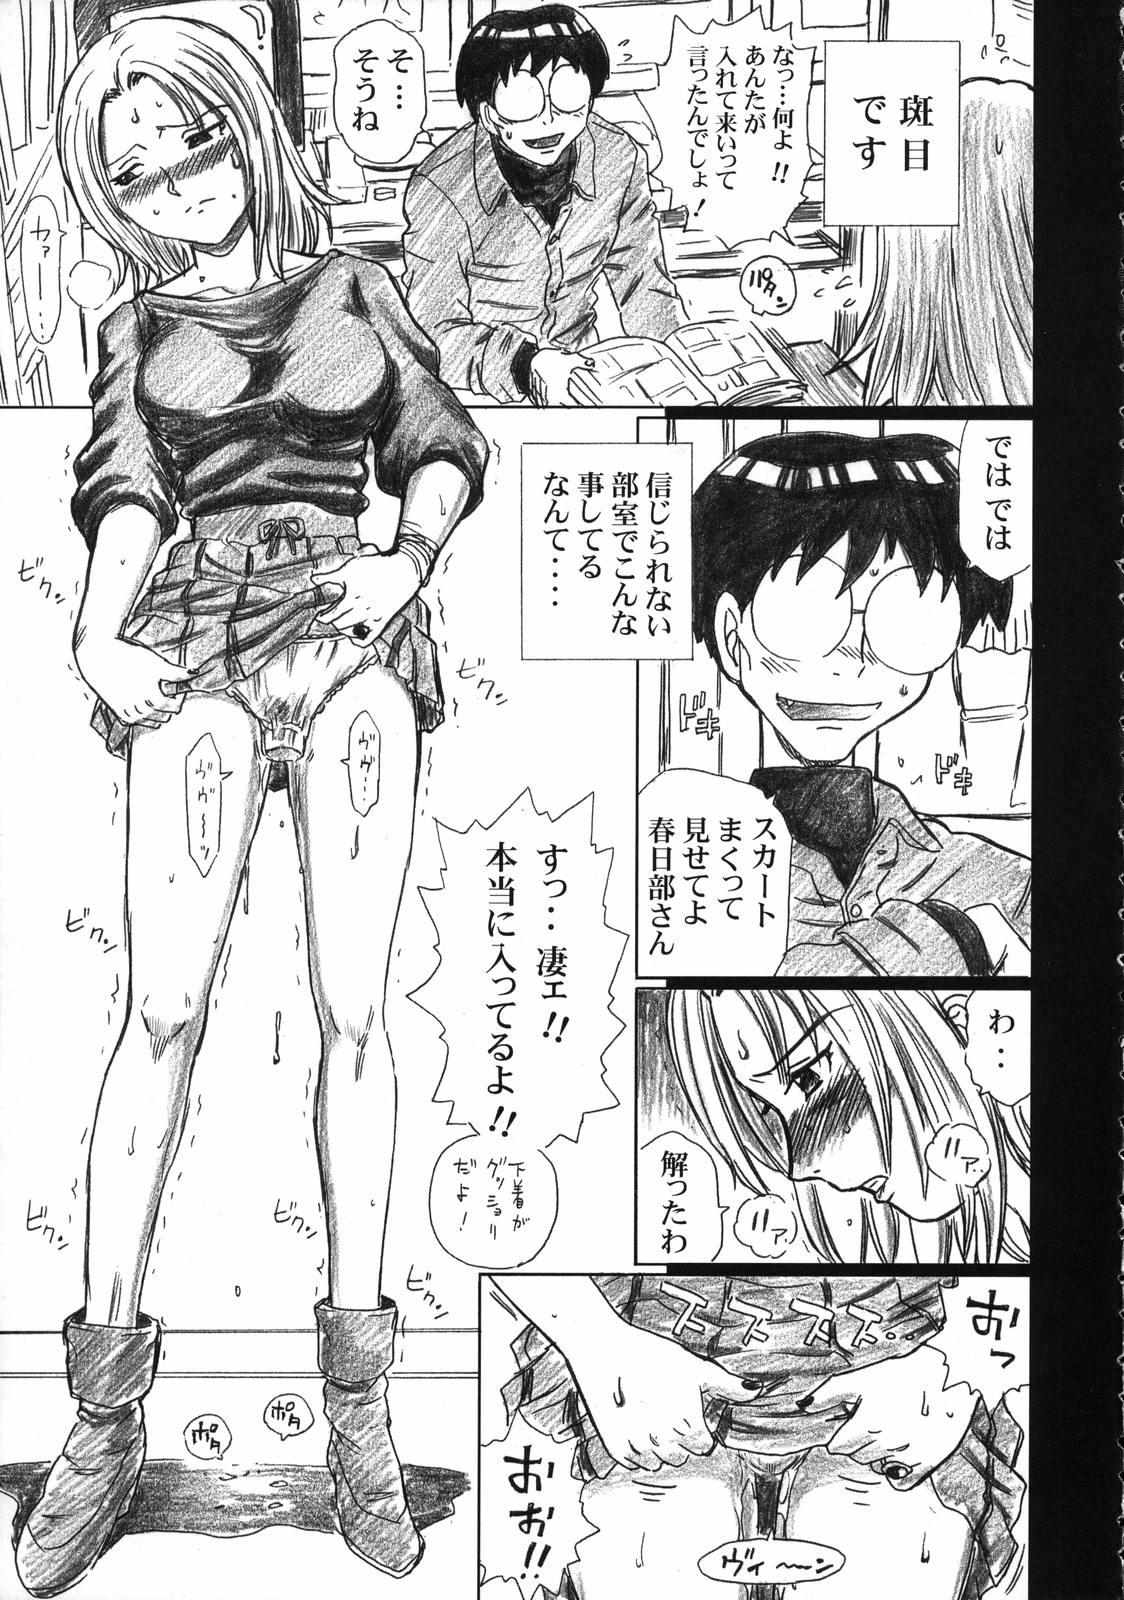 Nude TAIL-MAN SAKI KASUKABE BOOK - Genshiken Sub - Page 4